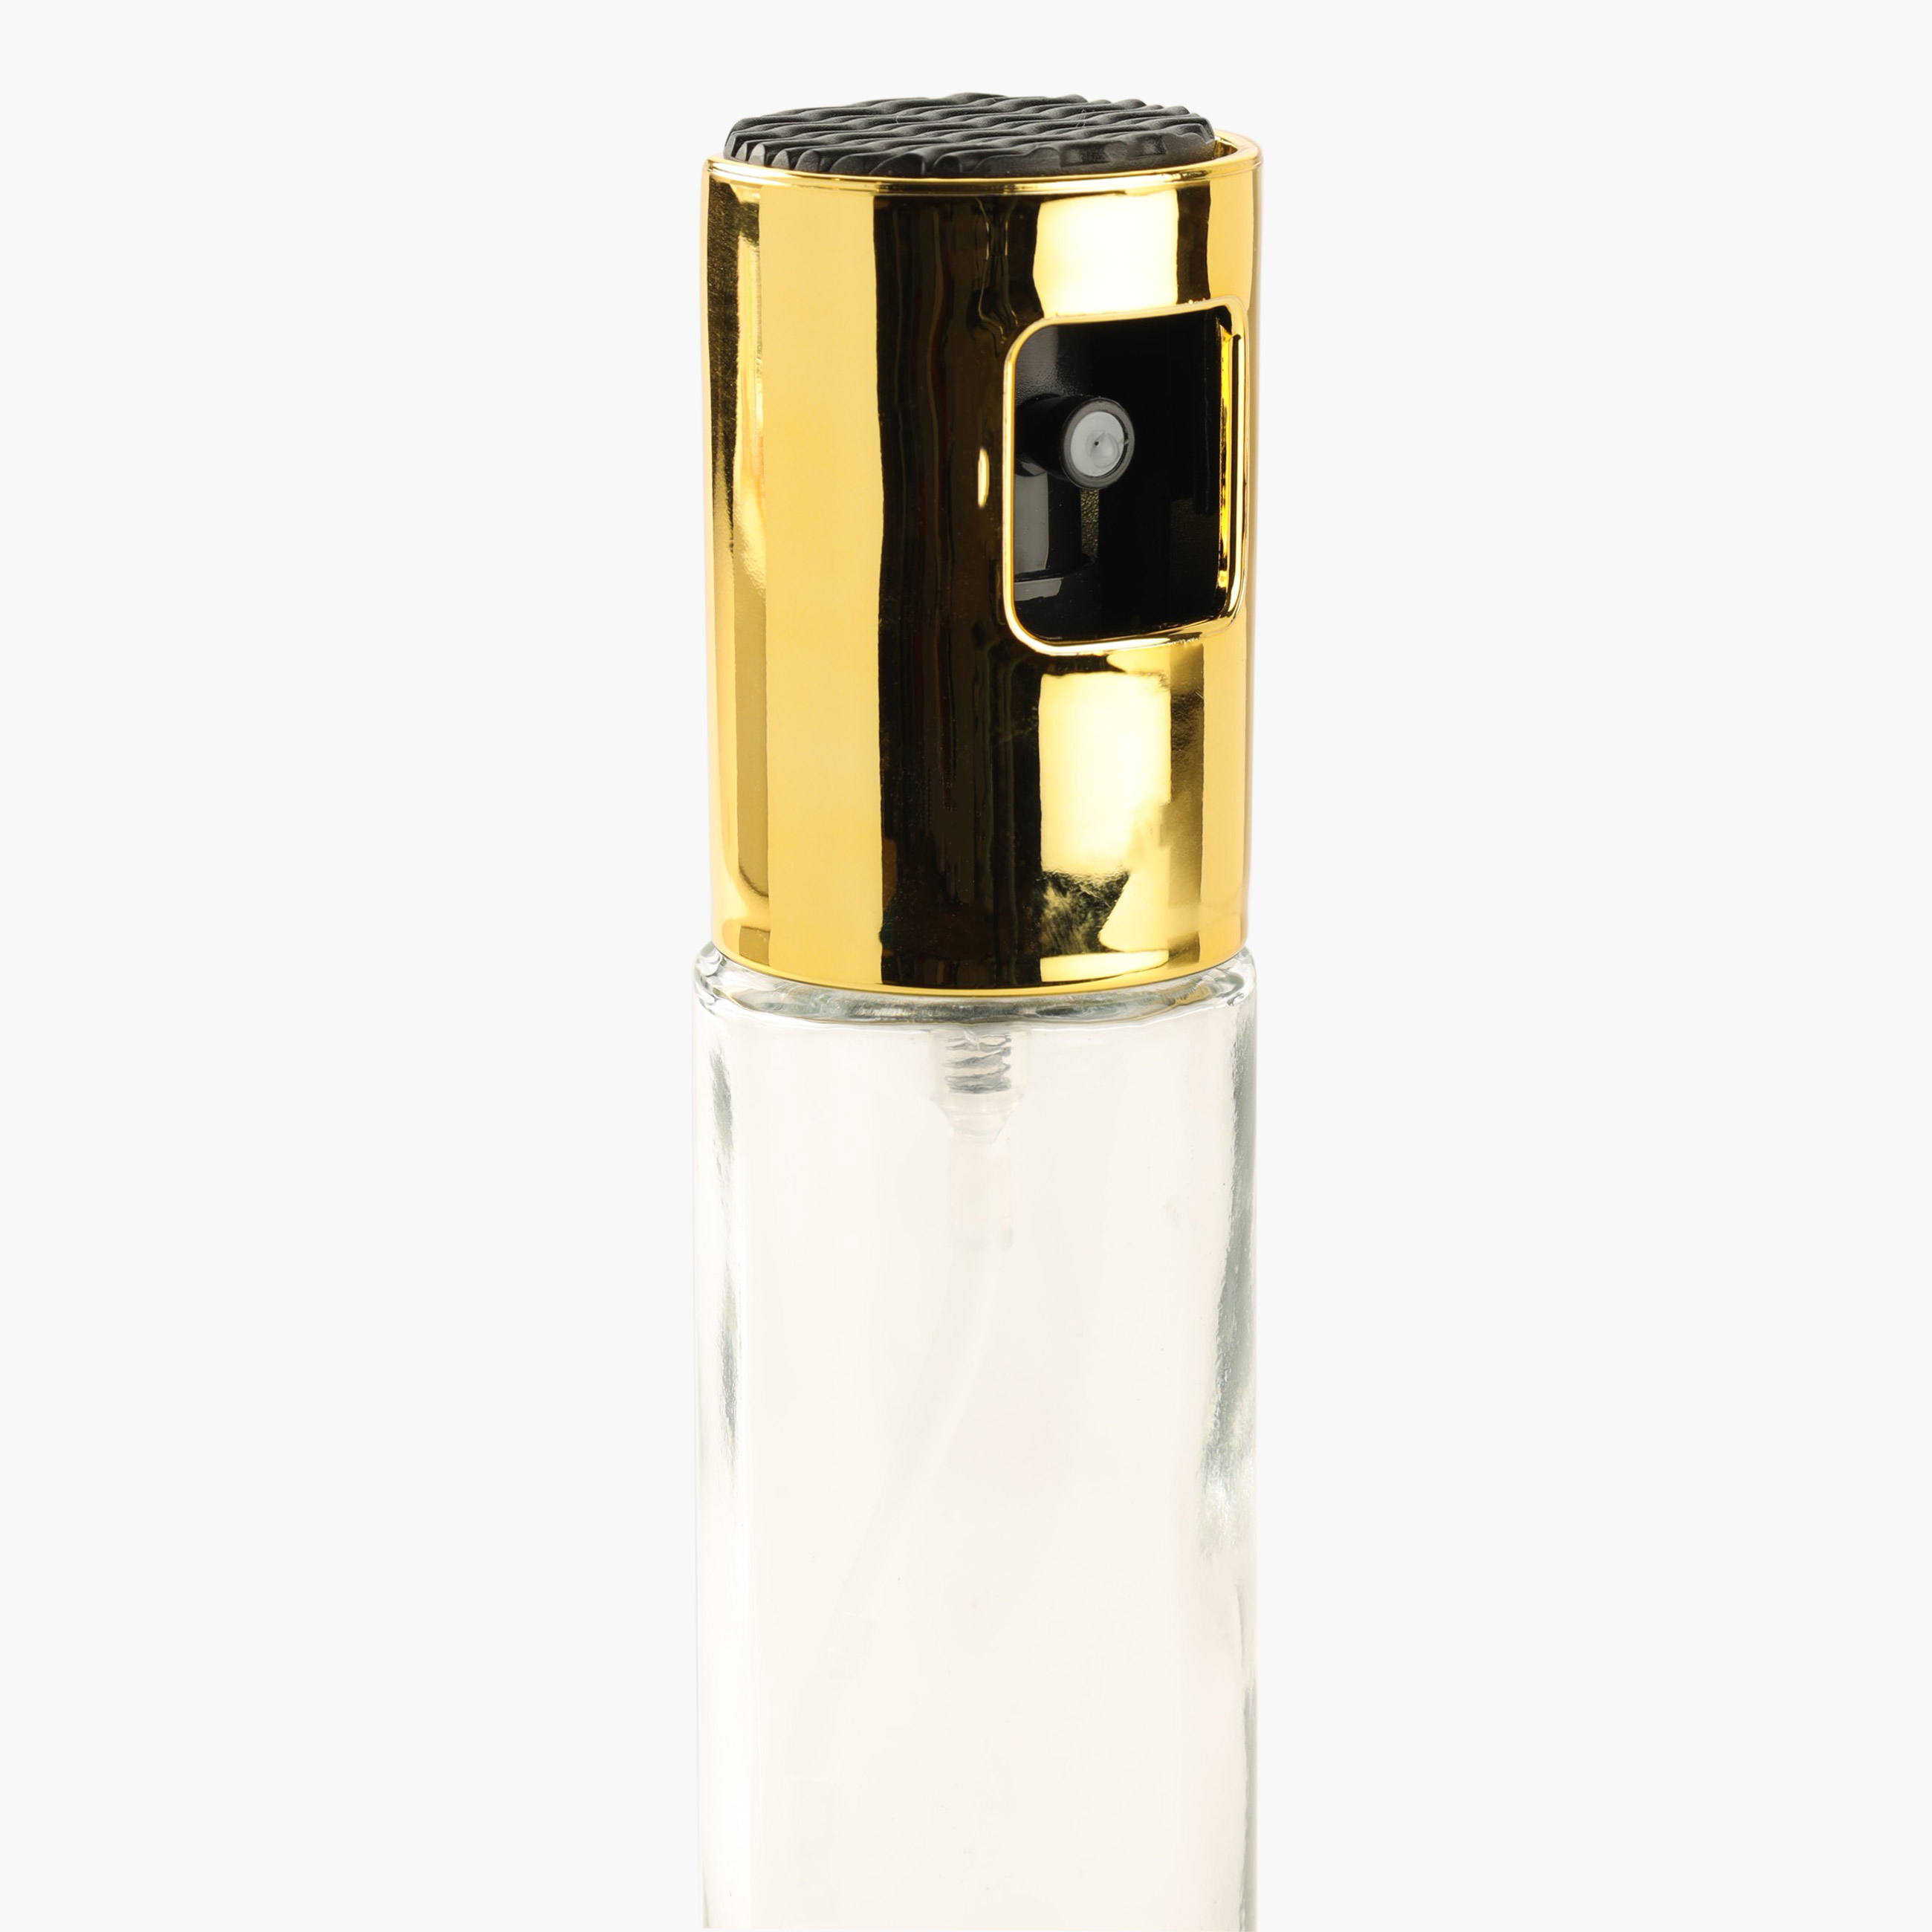 Диспенсер-спрей для масла или уксуса, 110 мл, стекло/пластик, золотистый, Classic gold изображение № 2